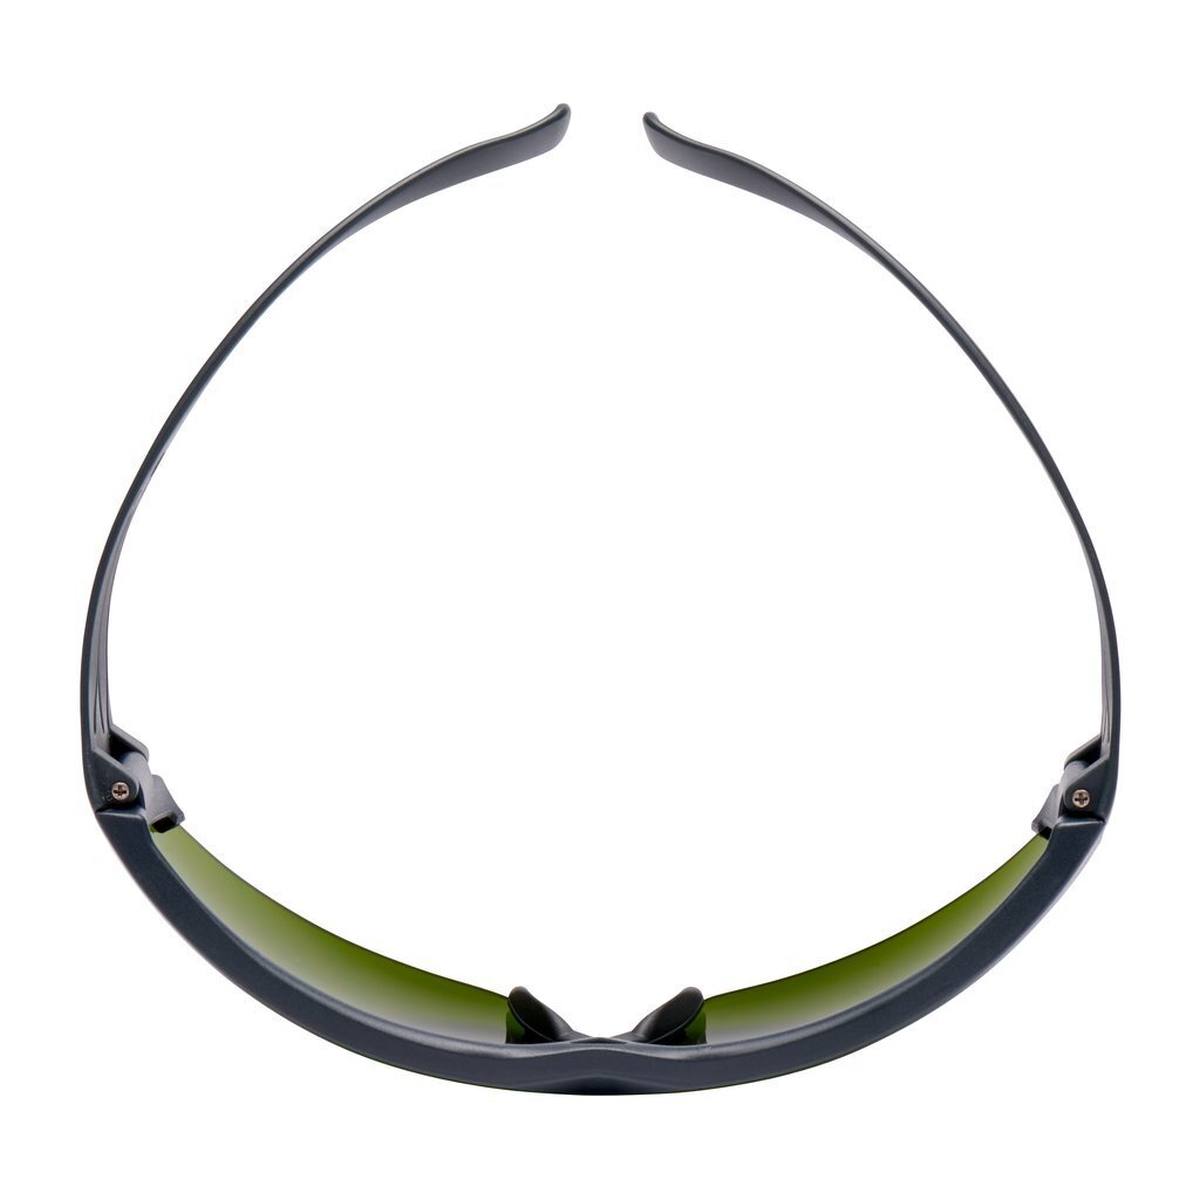 3M Gafas de protección SecureFit 600, patillas grises, tratamiento antirrayas, nivel de protección 3.0, SF630AS-EU